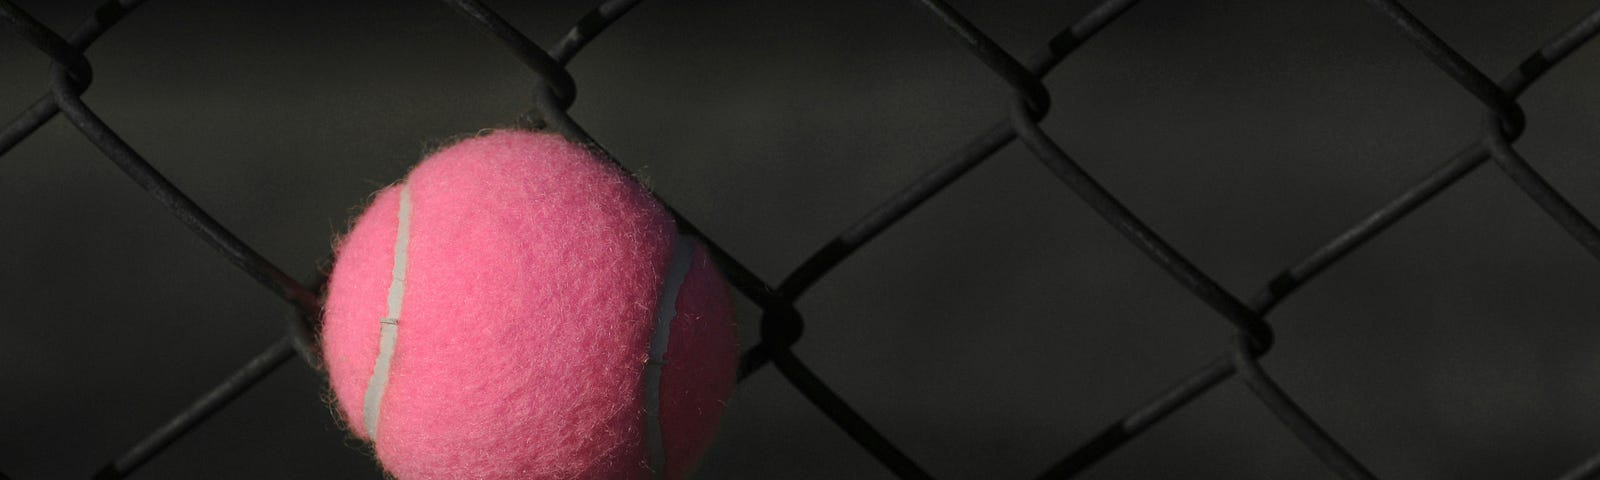 A pink tennis ball stuck on a dark fence.